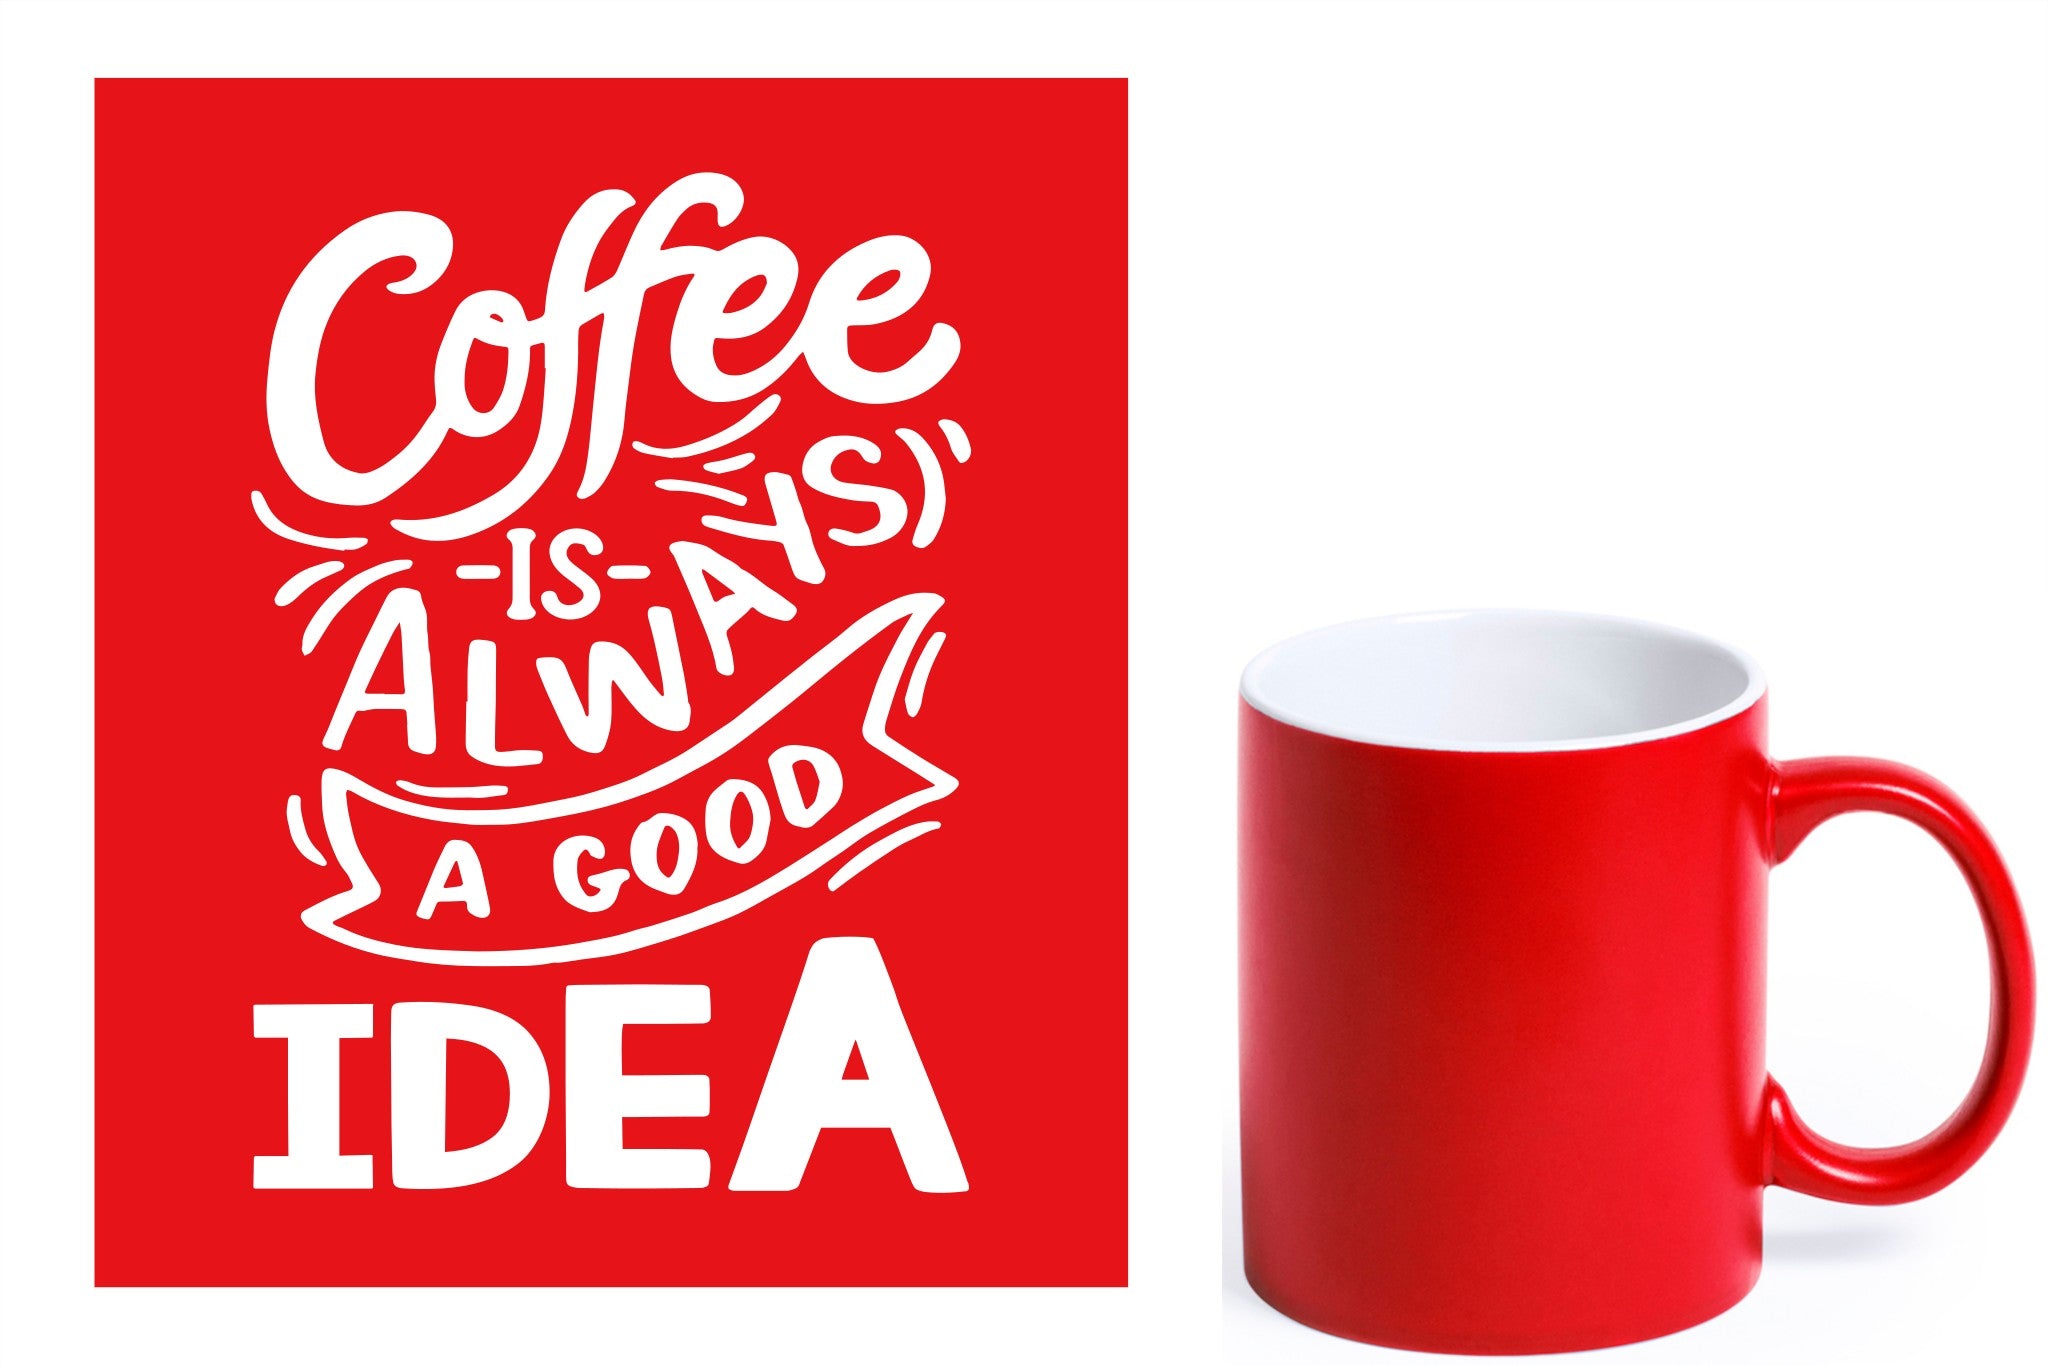 rode keramische mok met witte gravure  'Coffee is always a good idea'.